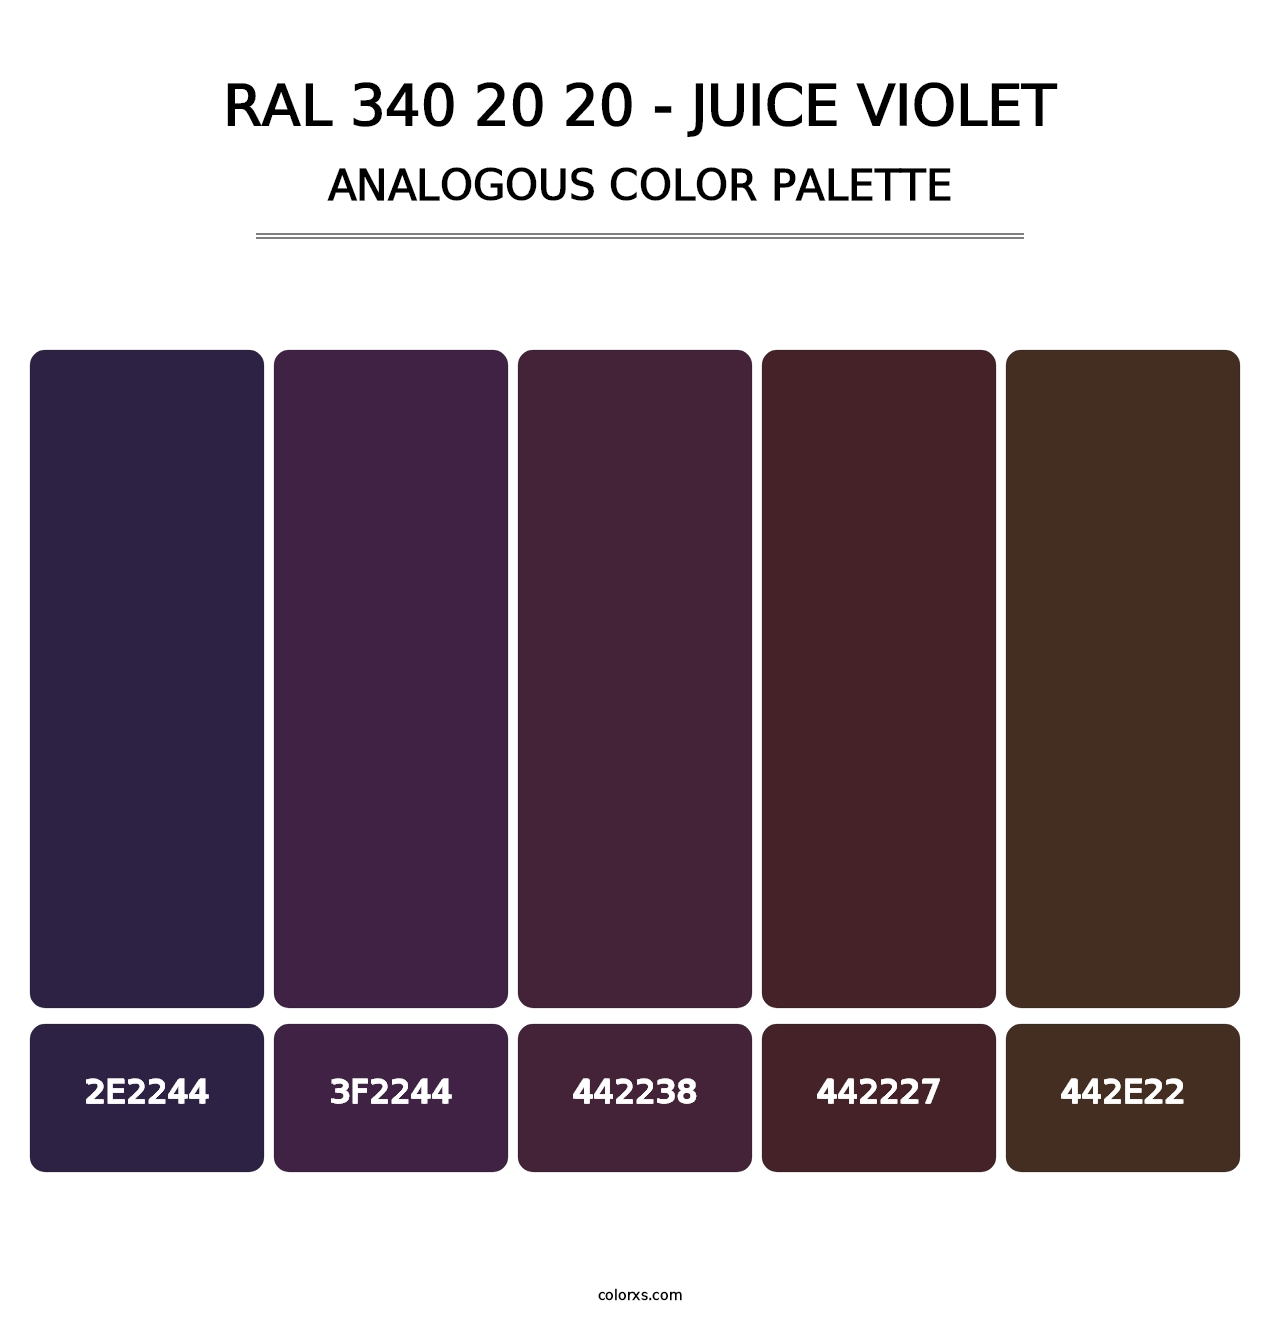 RAL 340 20 20 - Juice Violet - Analogous Color Palette